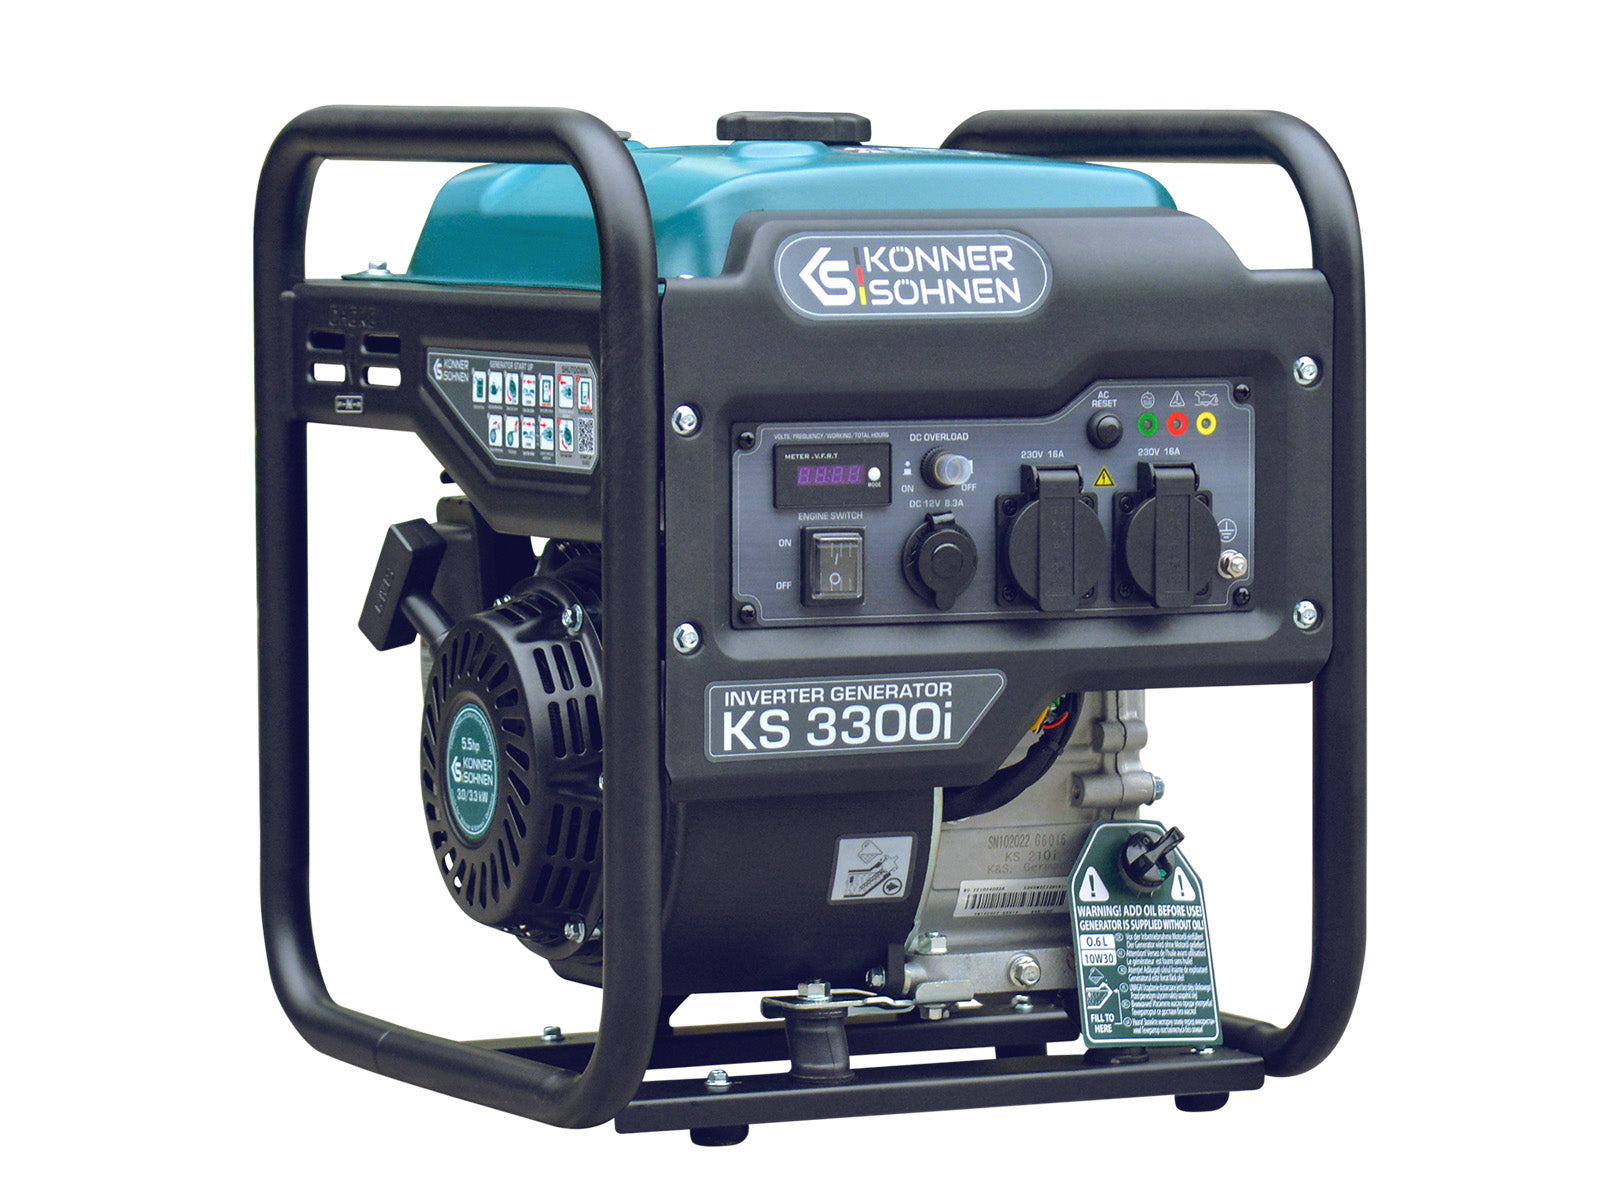 Generador inverter Könner & Söhnen KS 3300i